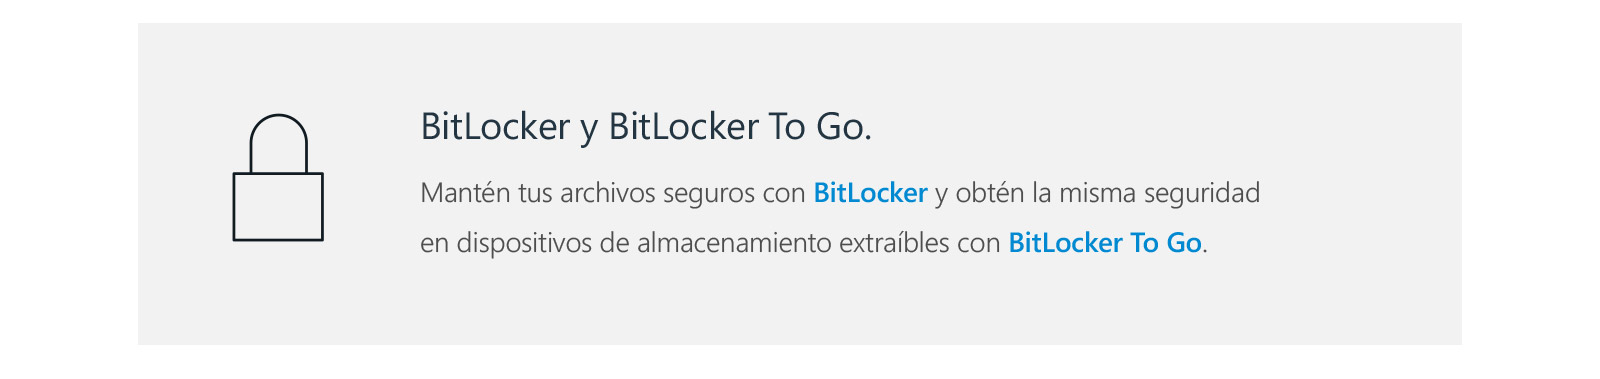 BitLocker y BitLocker To Go. Mantén tus archivos seguros con BitLocker y obtén la misma seguridad en dispositivos de almacenamiento extraíbles con BitLocker To Go.